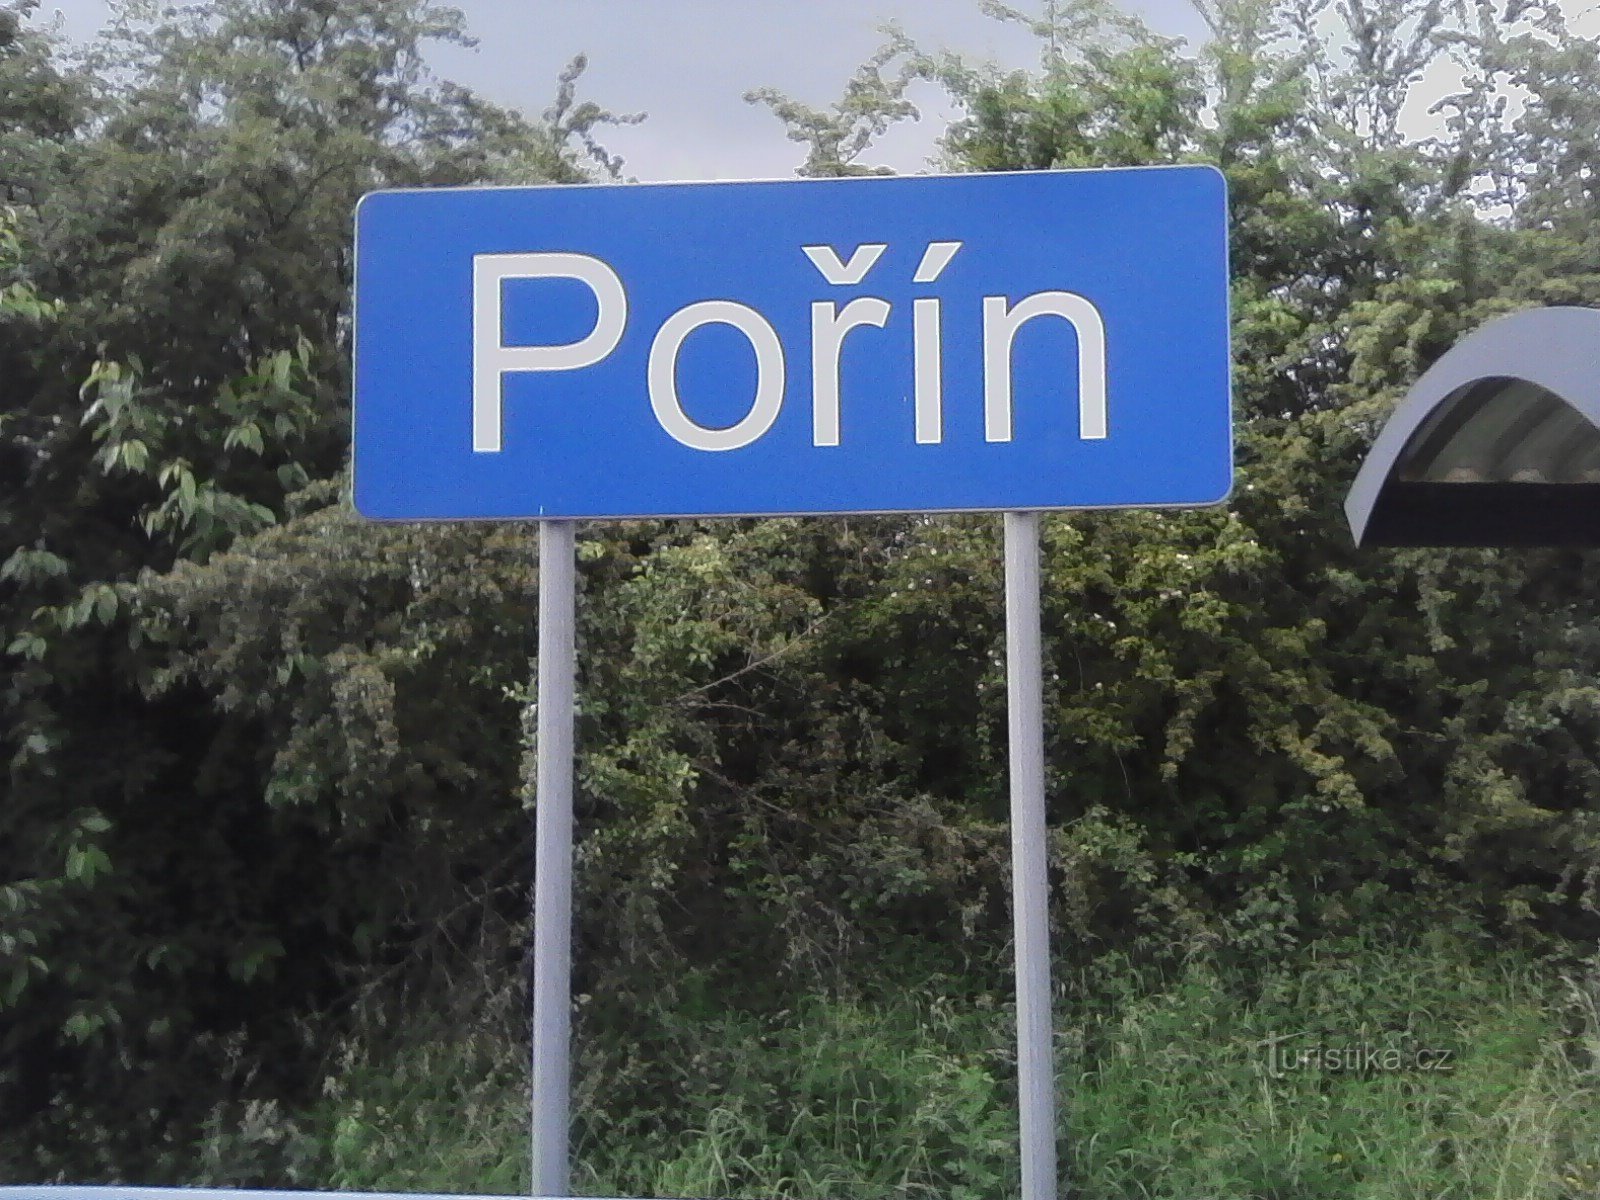 1. Tàu dừng ở Pořín - nơi bắt đầu cuộc hành trình.